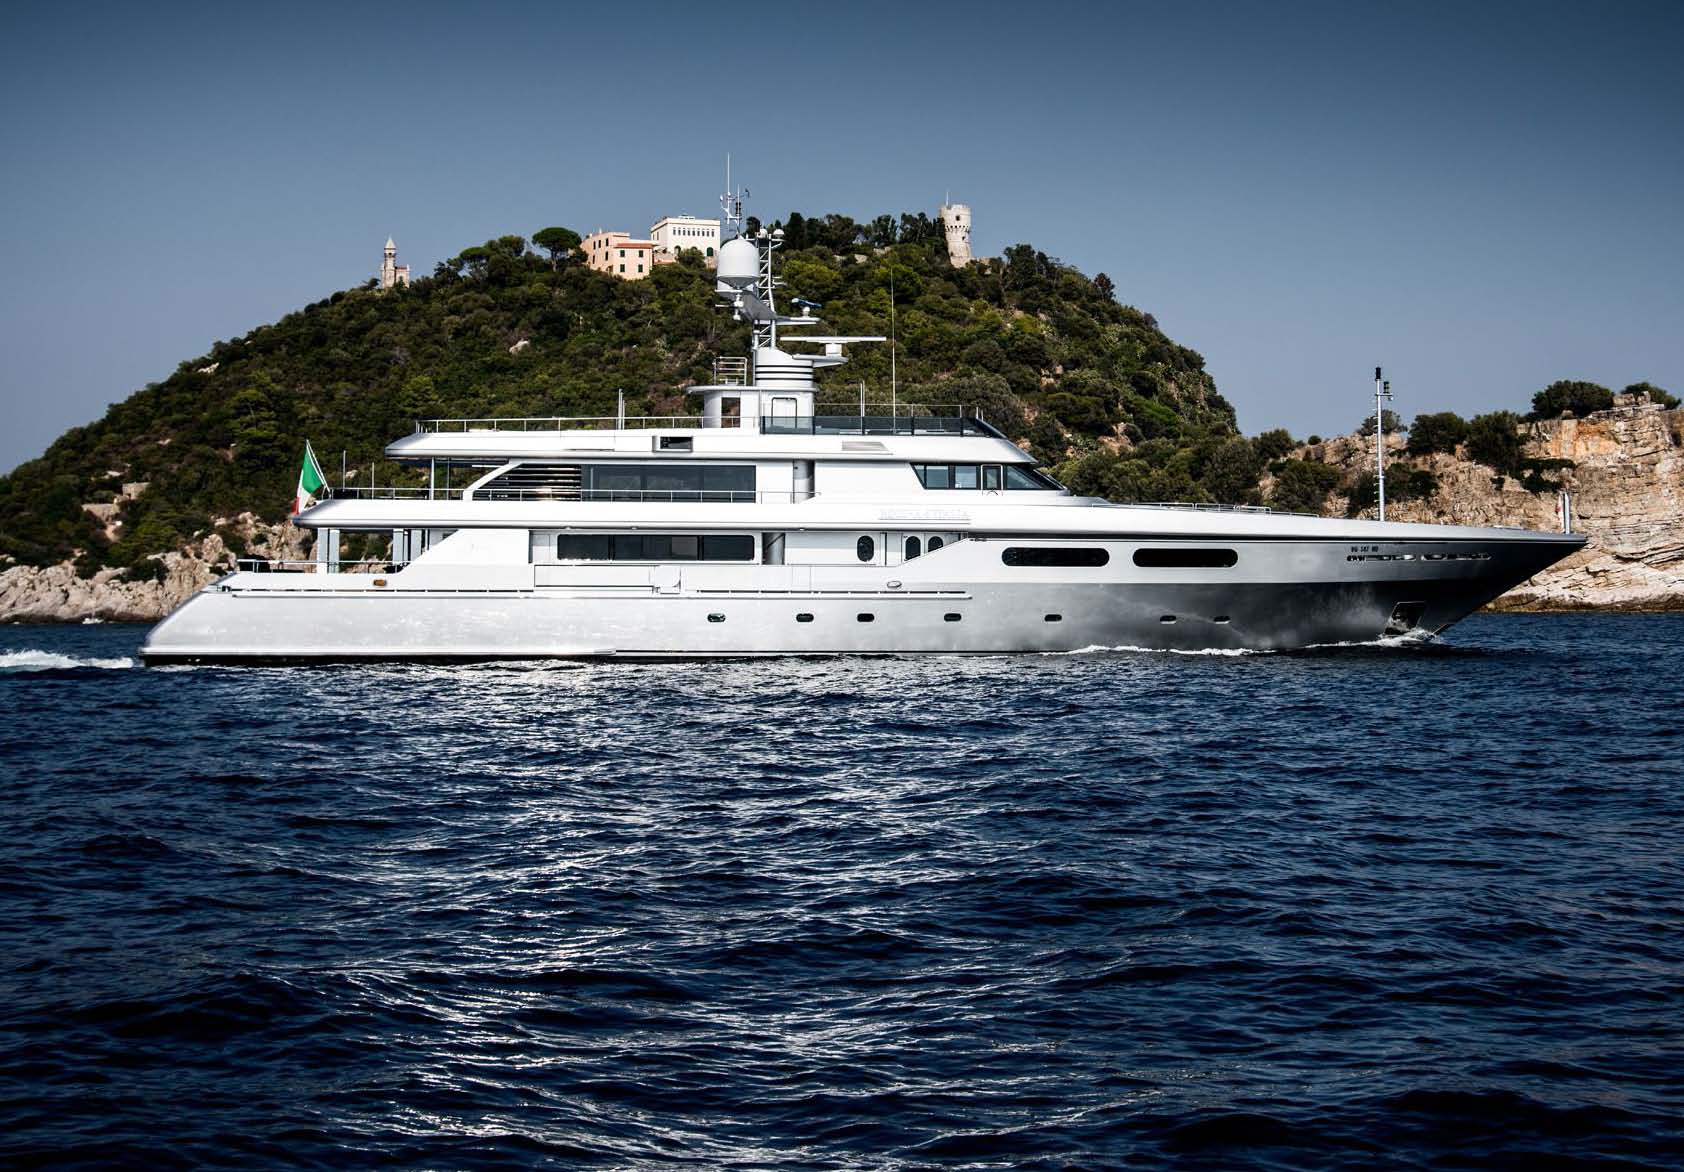 who owns regina d'italia yacht